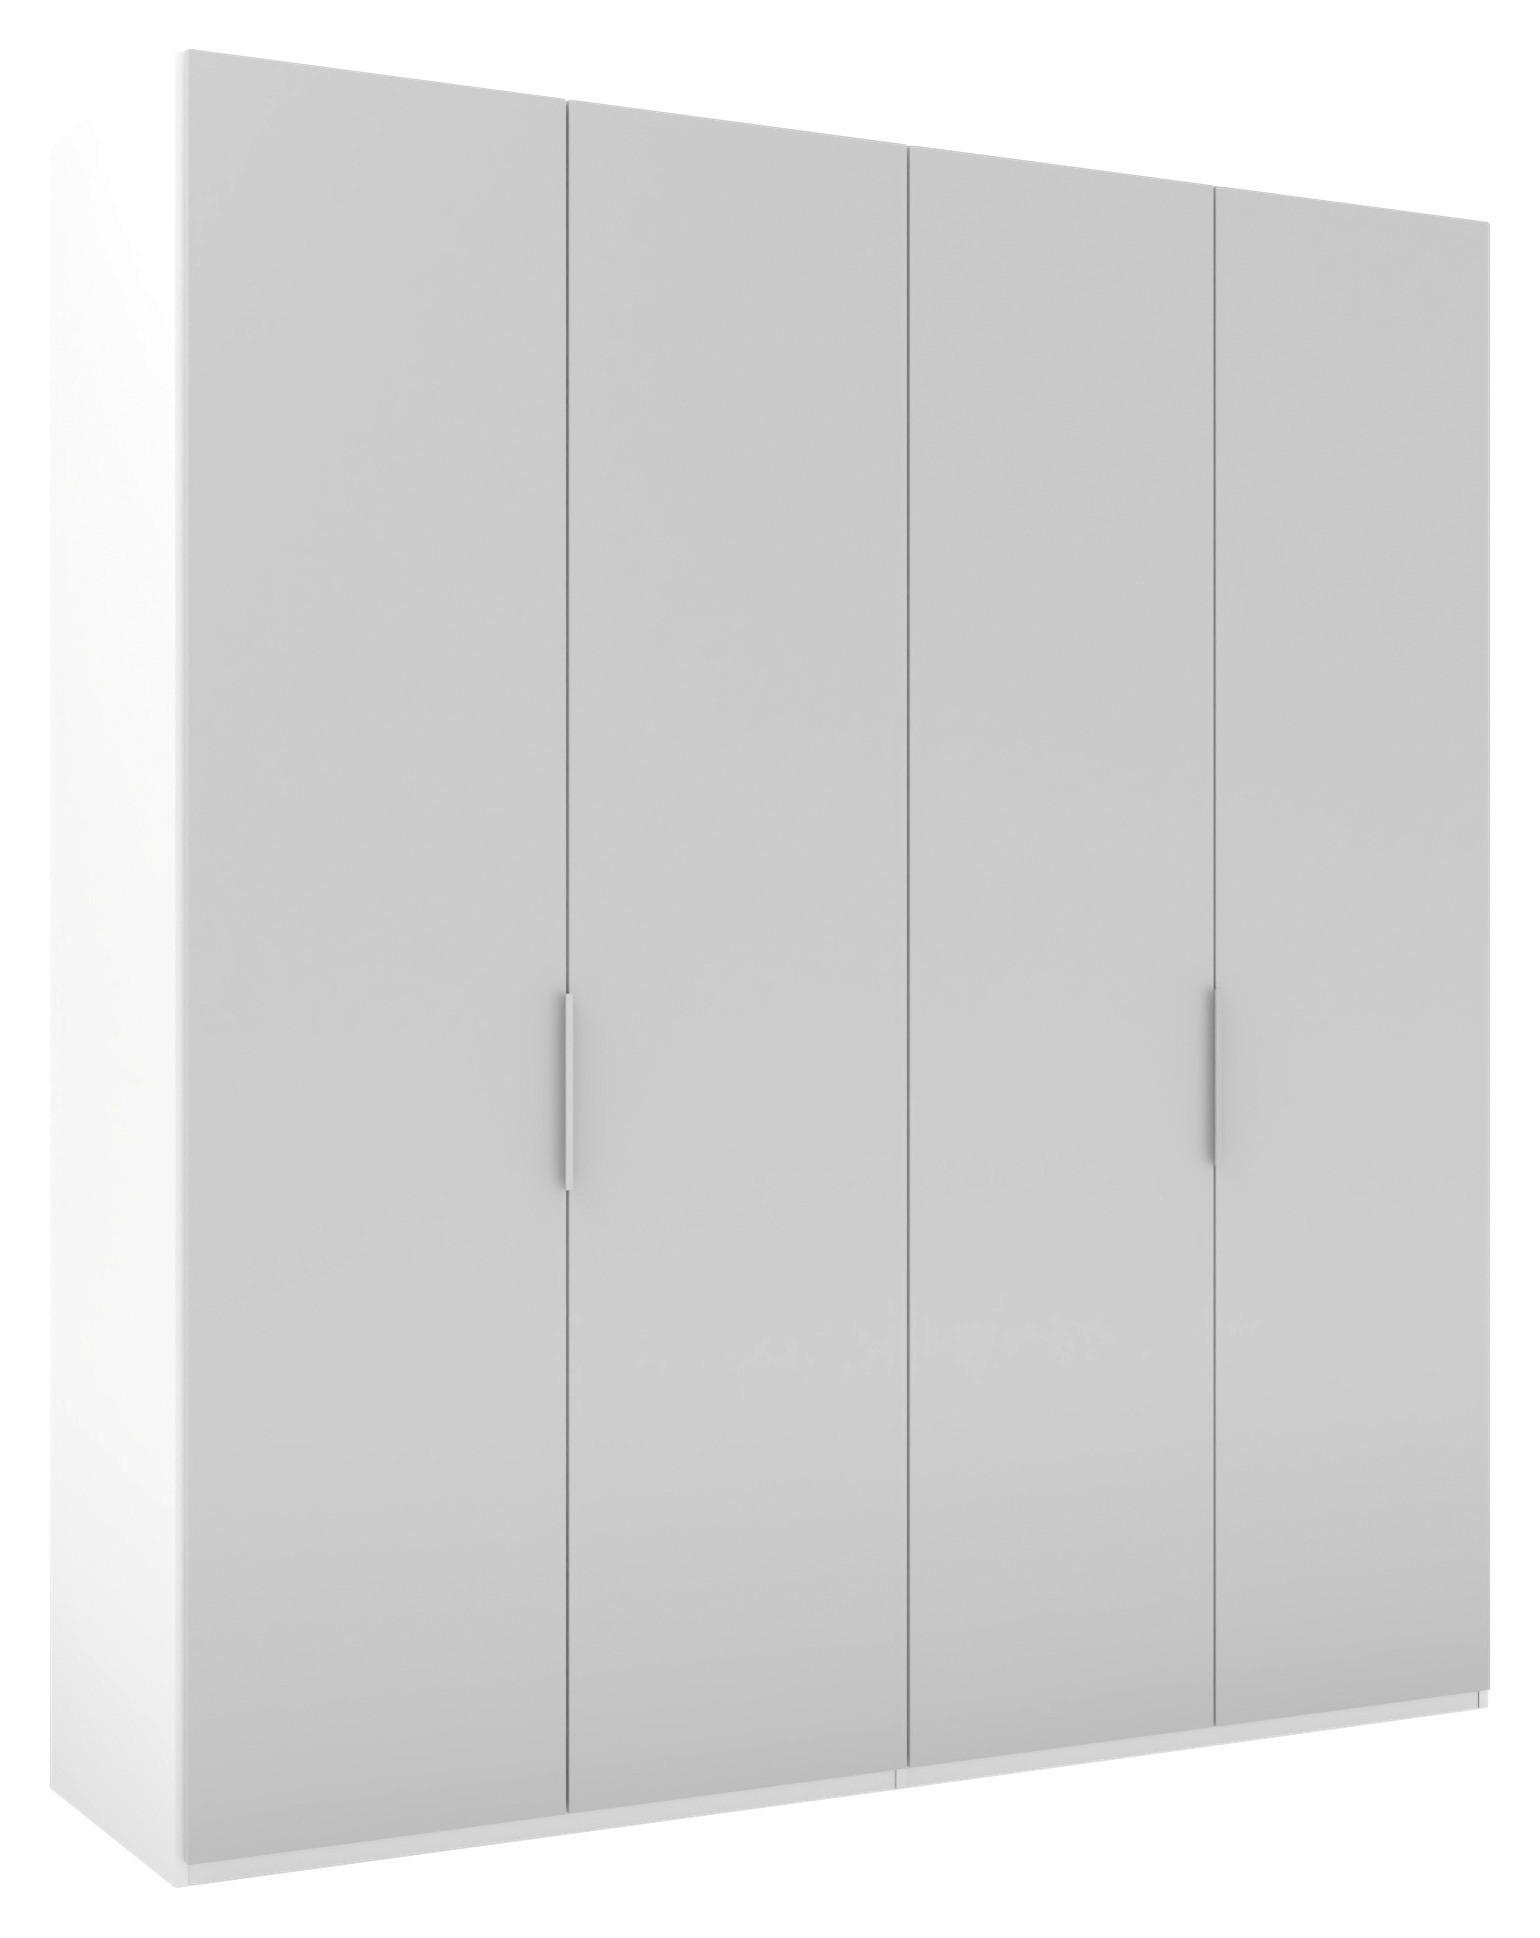 DREHTÜRENSCHRANK  in Grau, Weiß  - Alufarben/Weiß, KONVENTIONELL, Holzwerkstoff/Metall (200/223/62cm) - Visionight